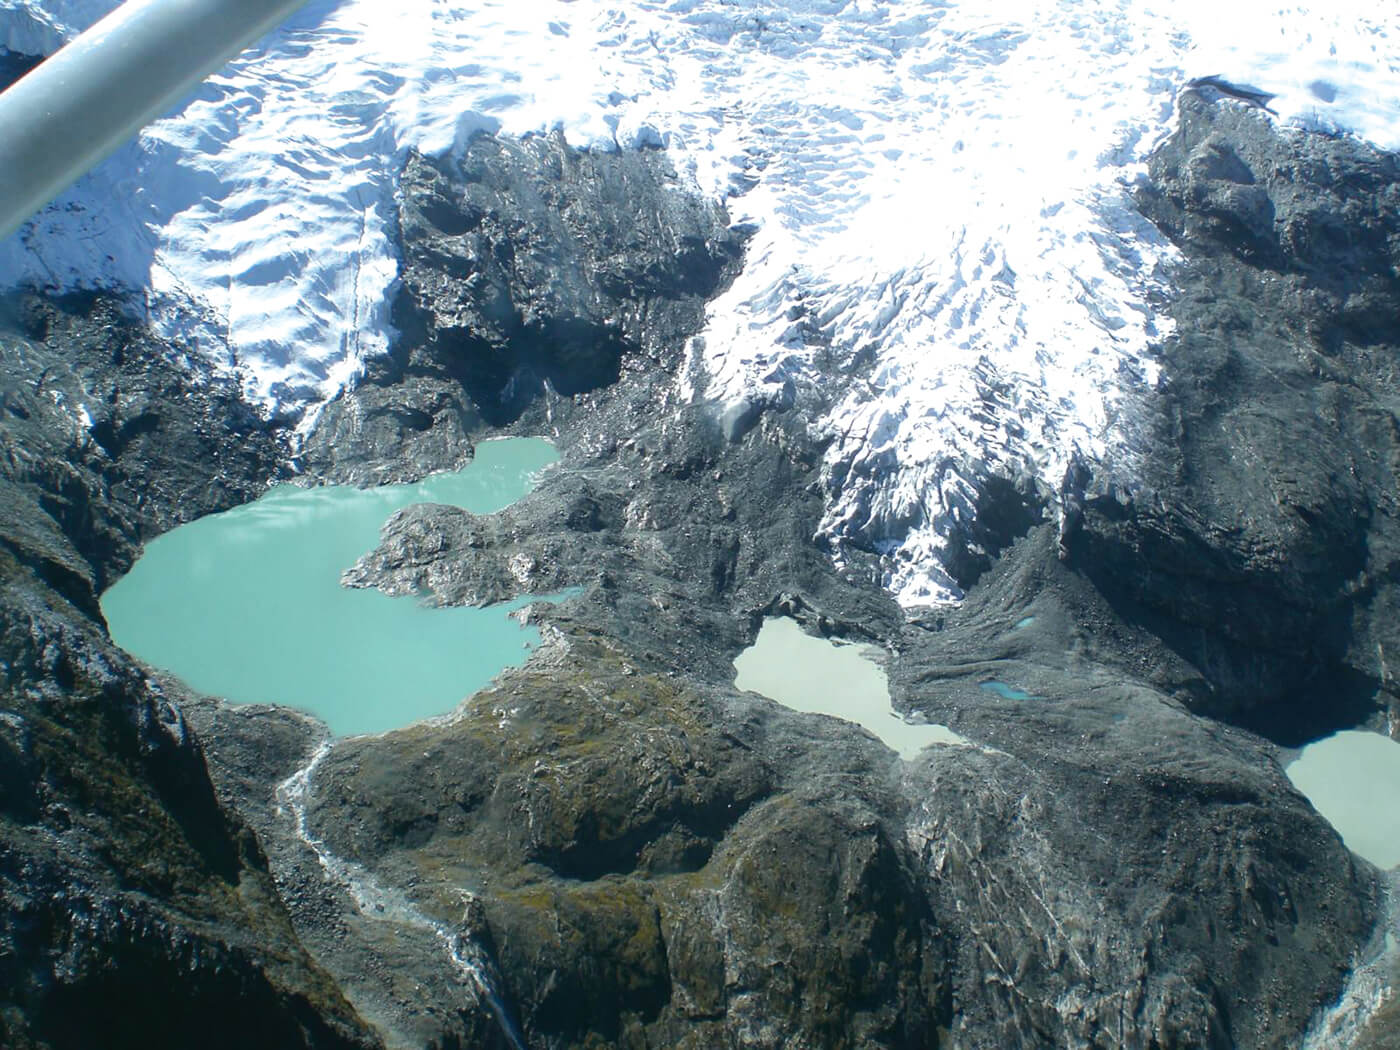 Зелёная и синяя талая вода на леднике северного склона Ама-Даблам обнажила под бывшим ледовым покровом скальную породу. Фото nepalitimes . com